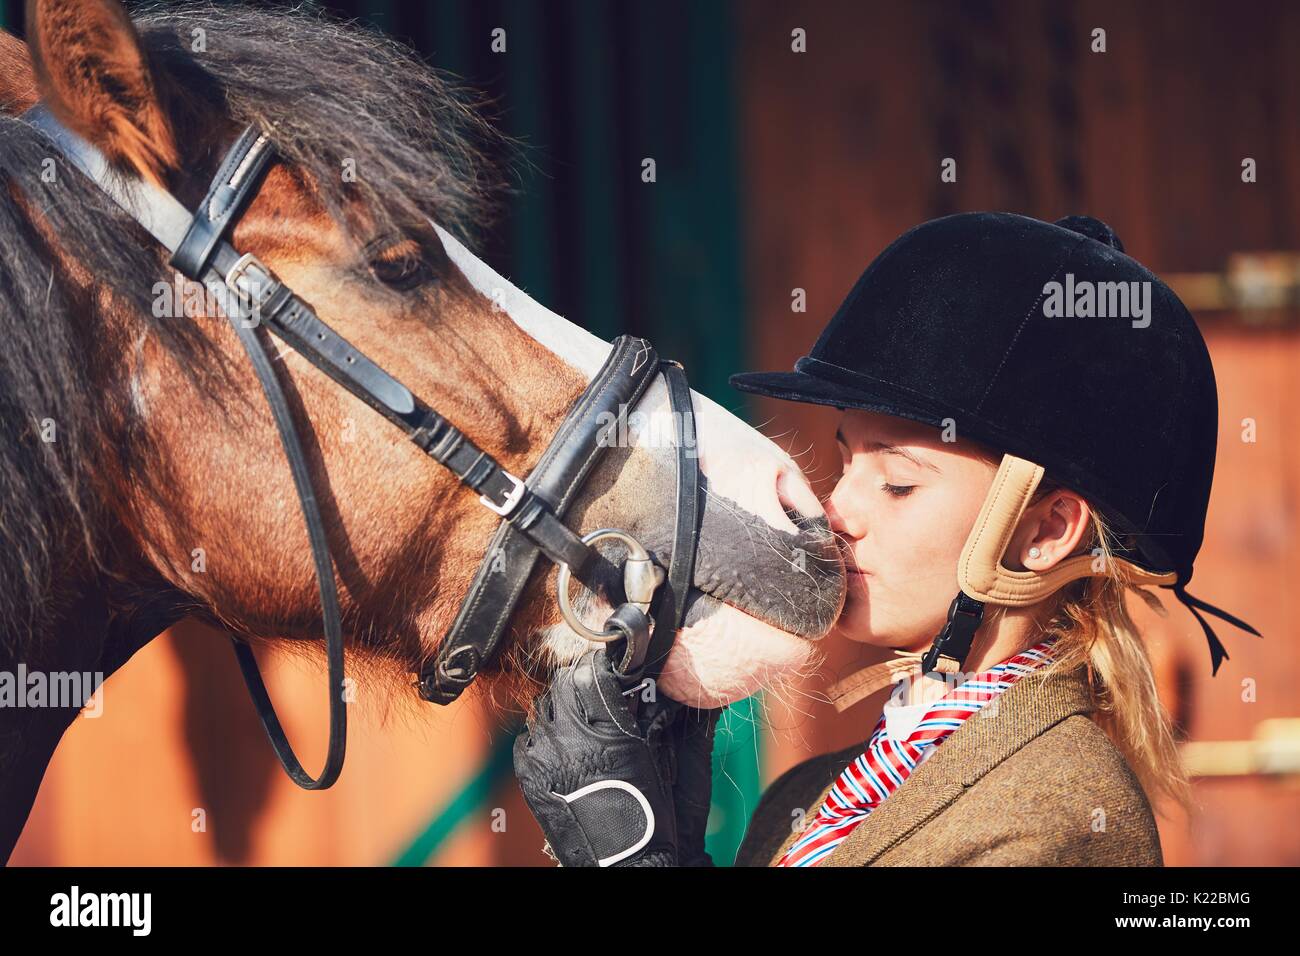 Elle baise avec son cheval